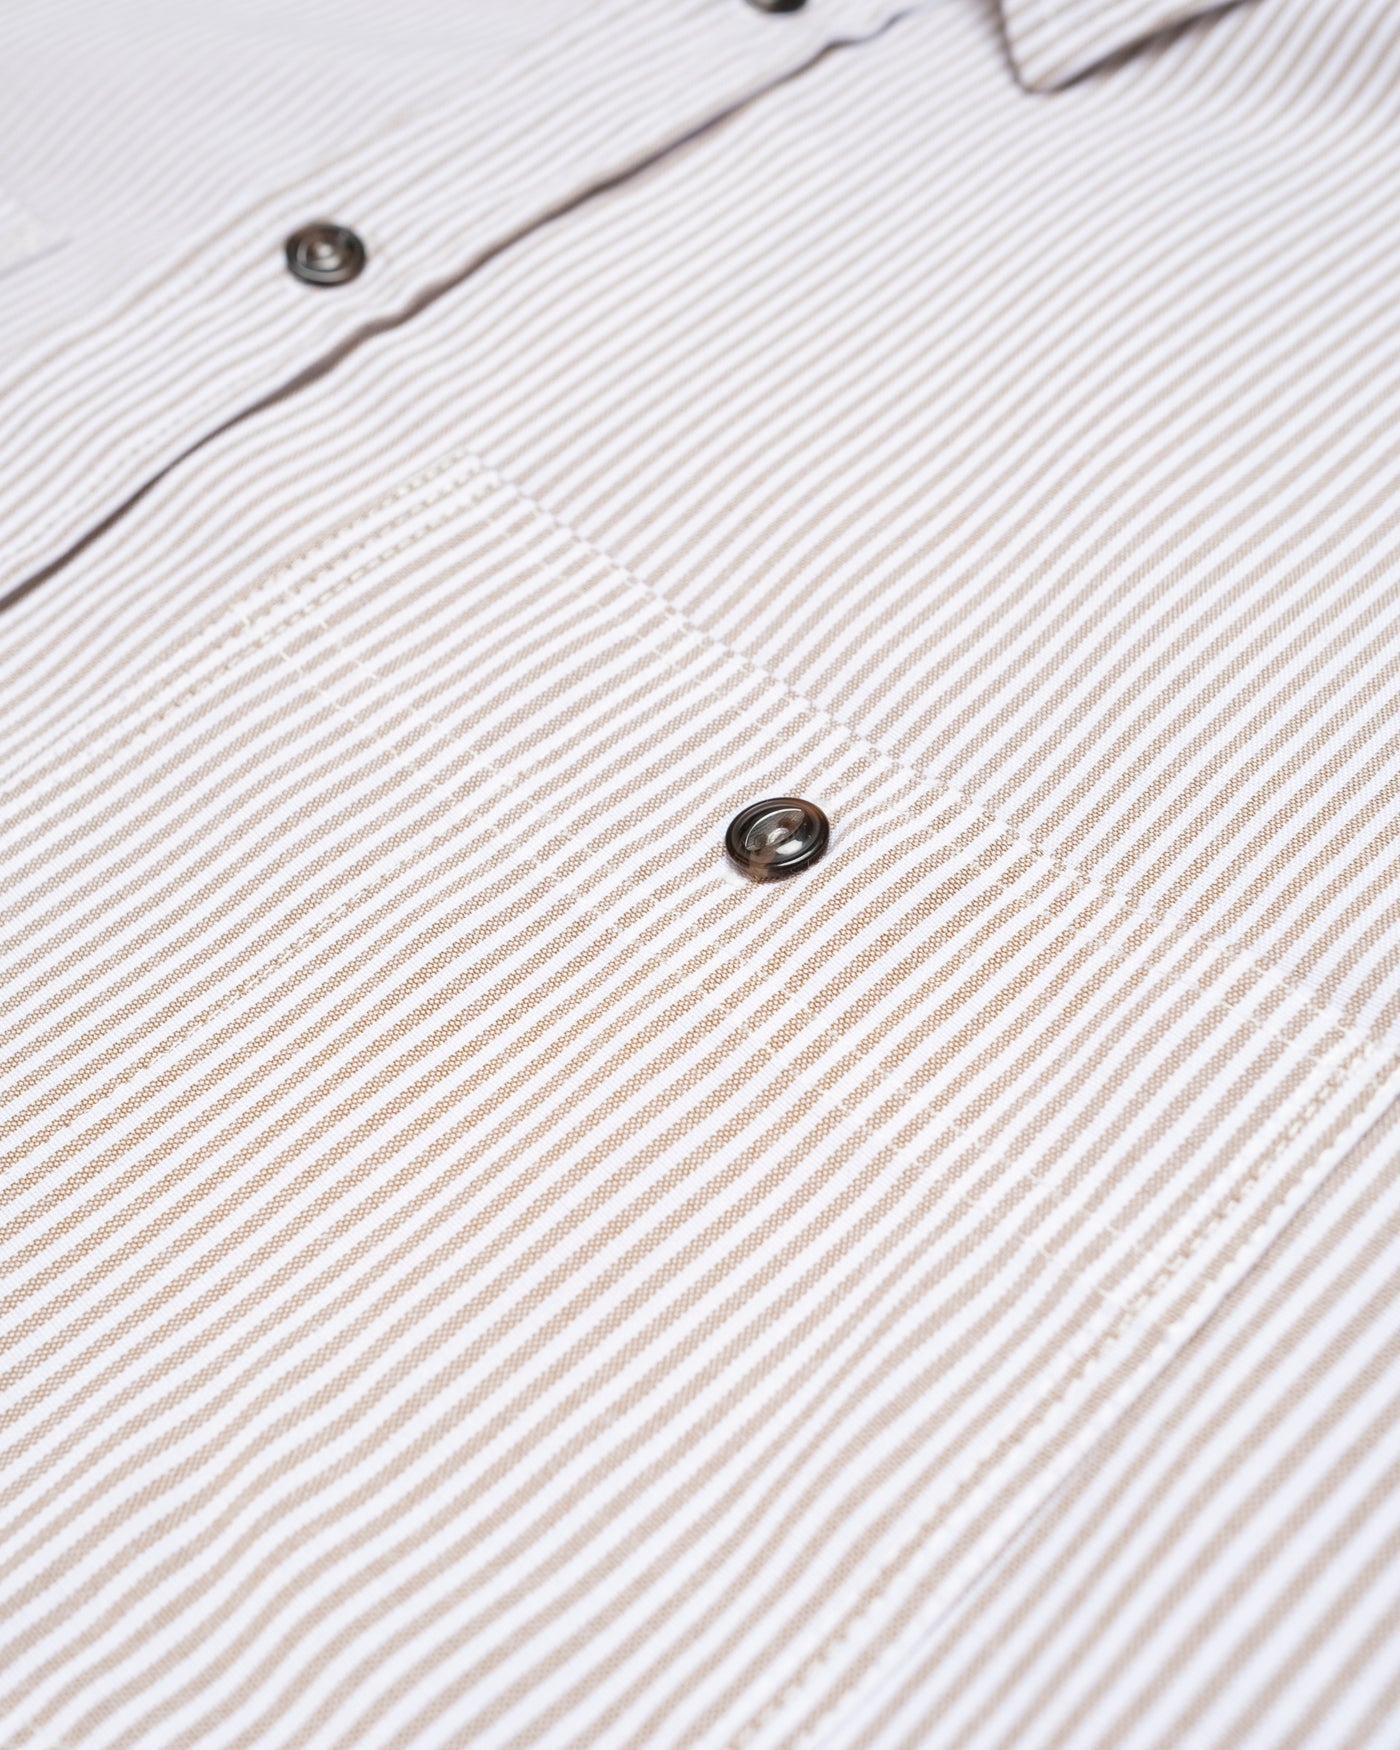 Mechanic Shirt Oxford Stripe Brown/White